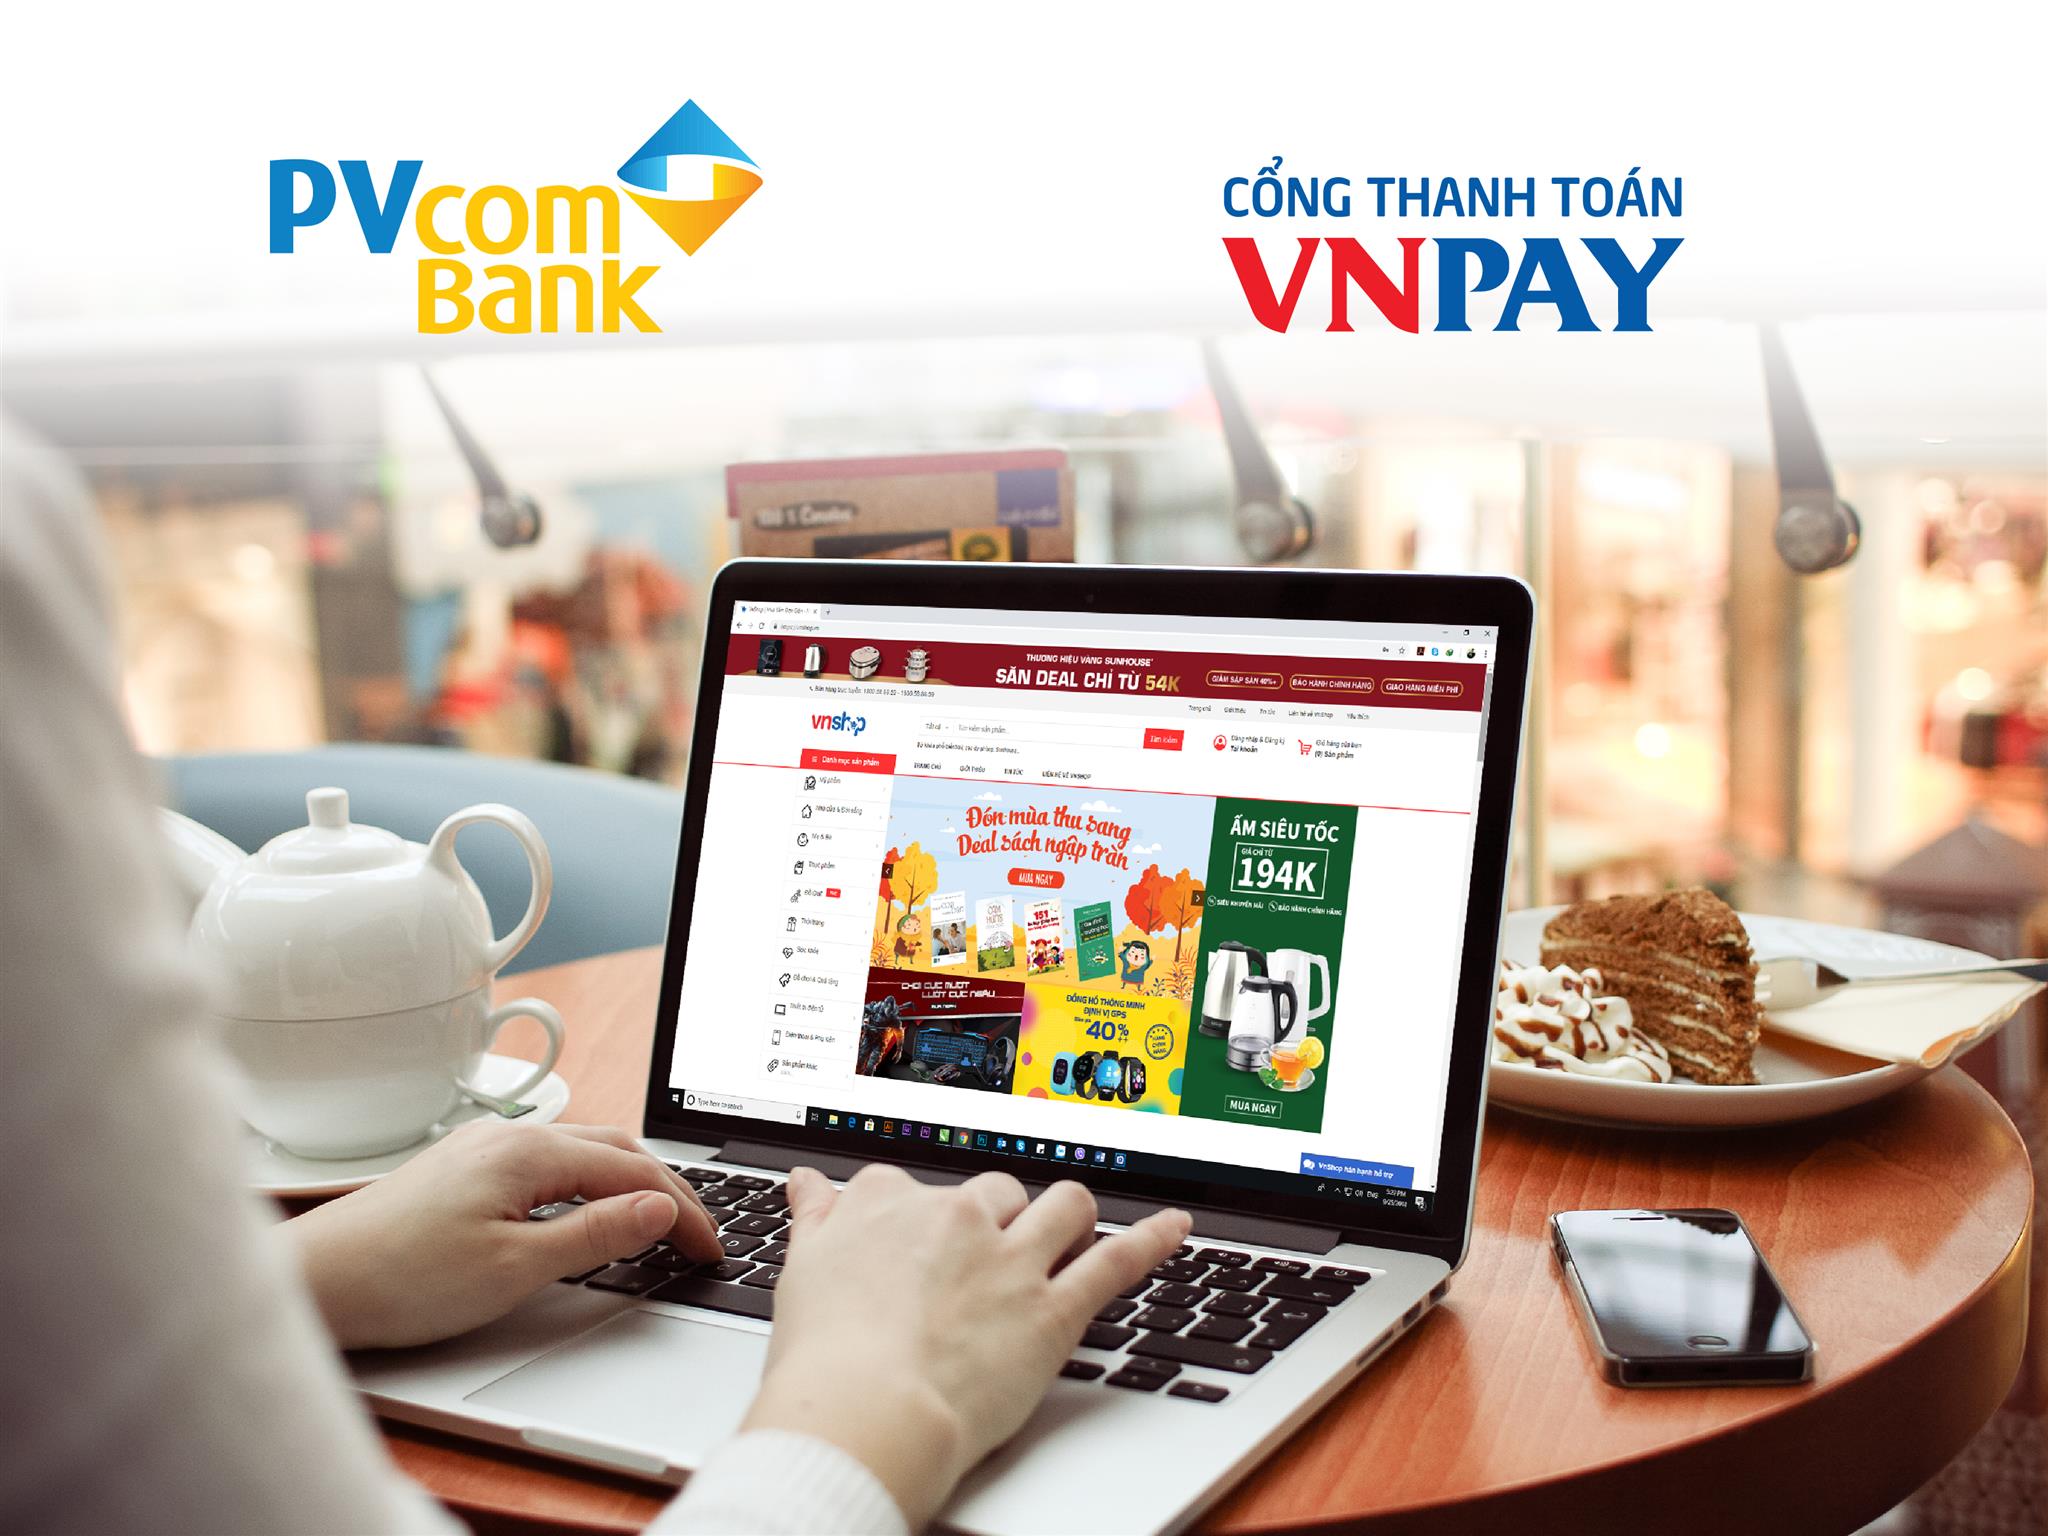 Khách hàng PVCOMBANK đã có thể thanh toán dịch vụ qua cổng VNPAY